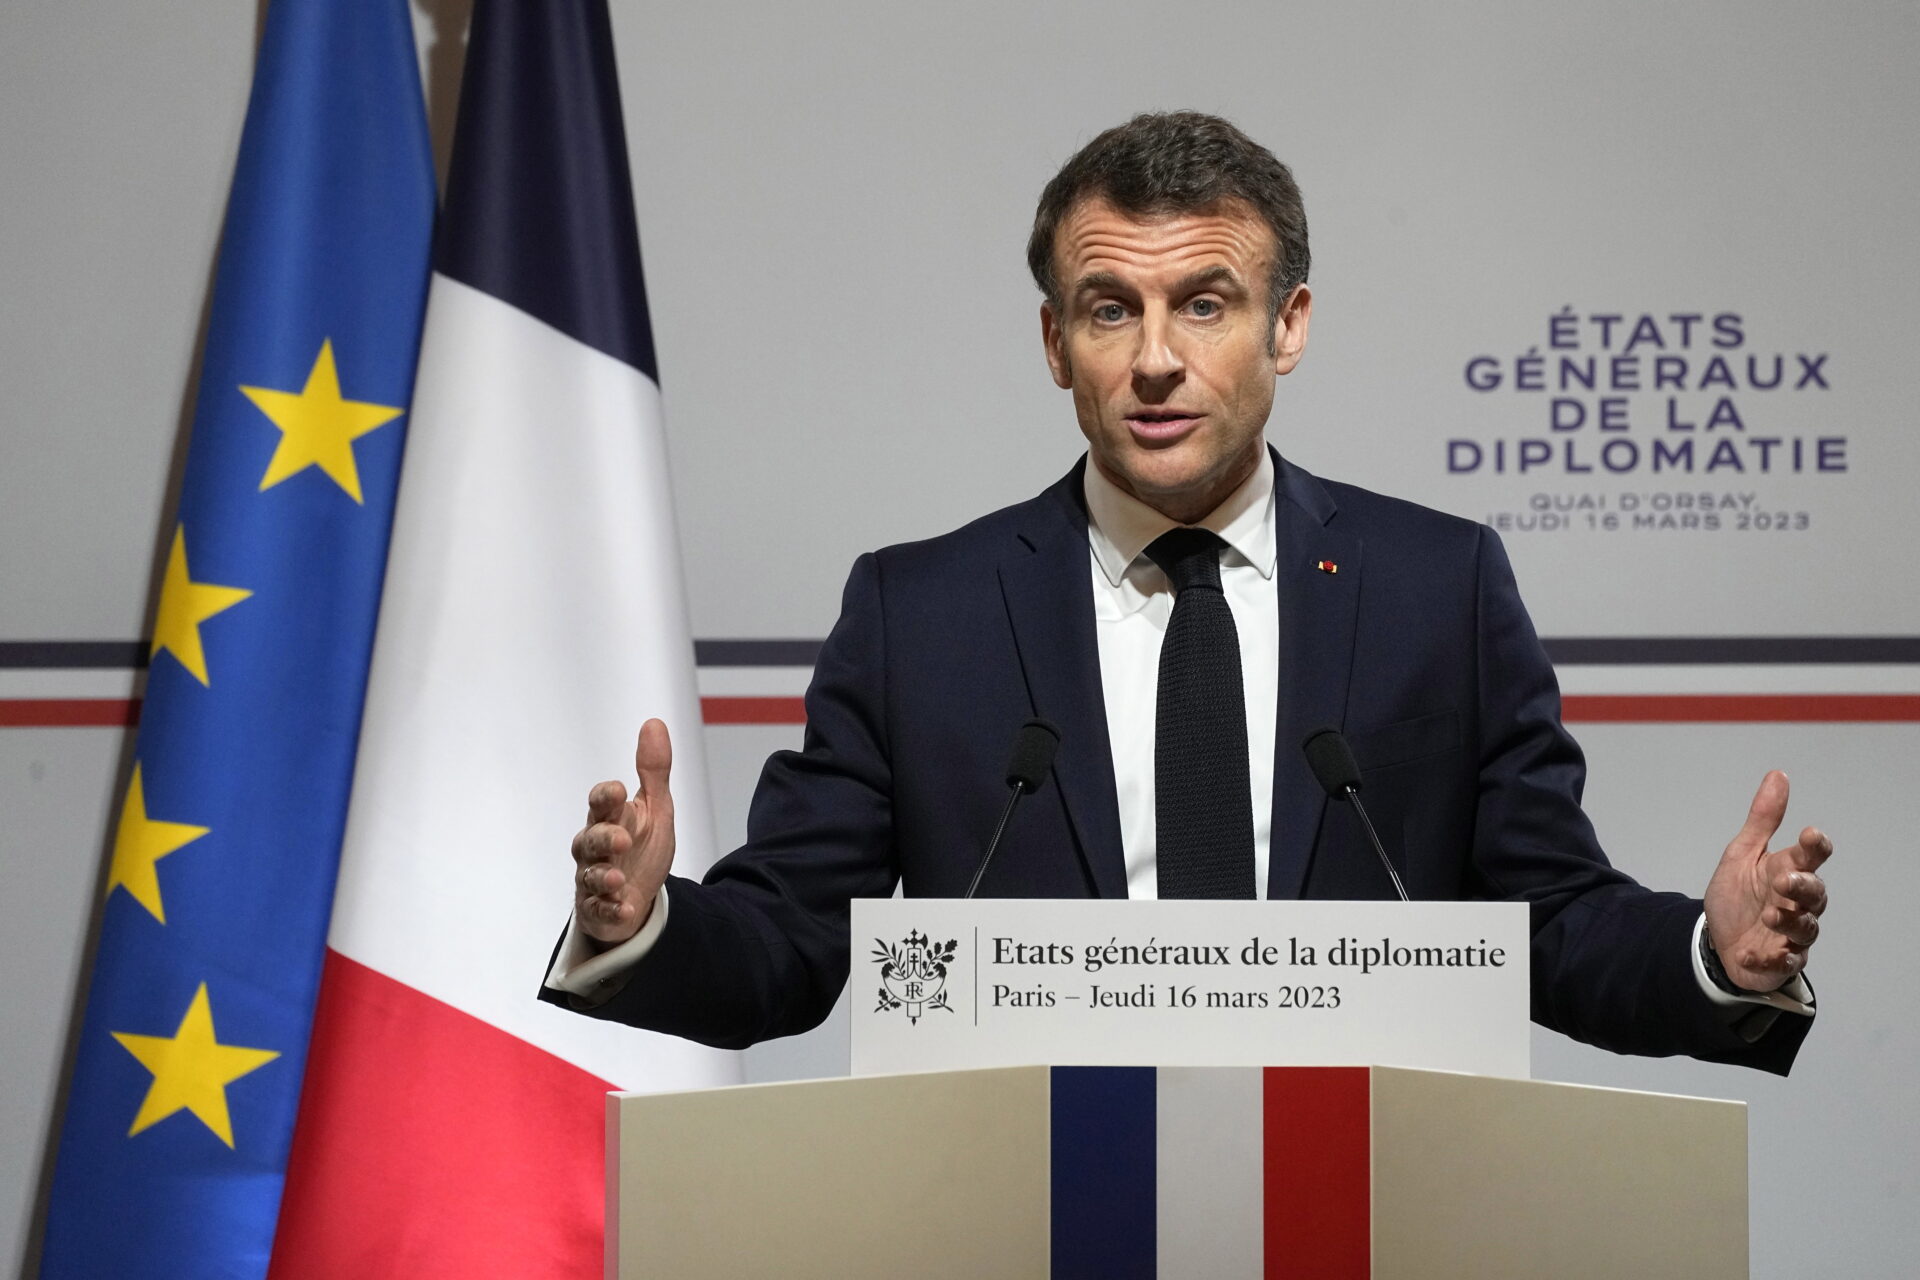 Macron aprueba la reforma de pensiones sin el voto de la Asamblea